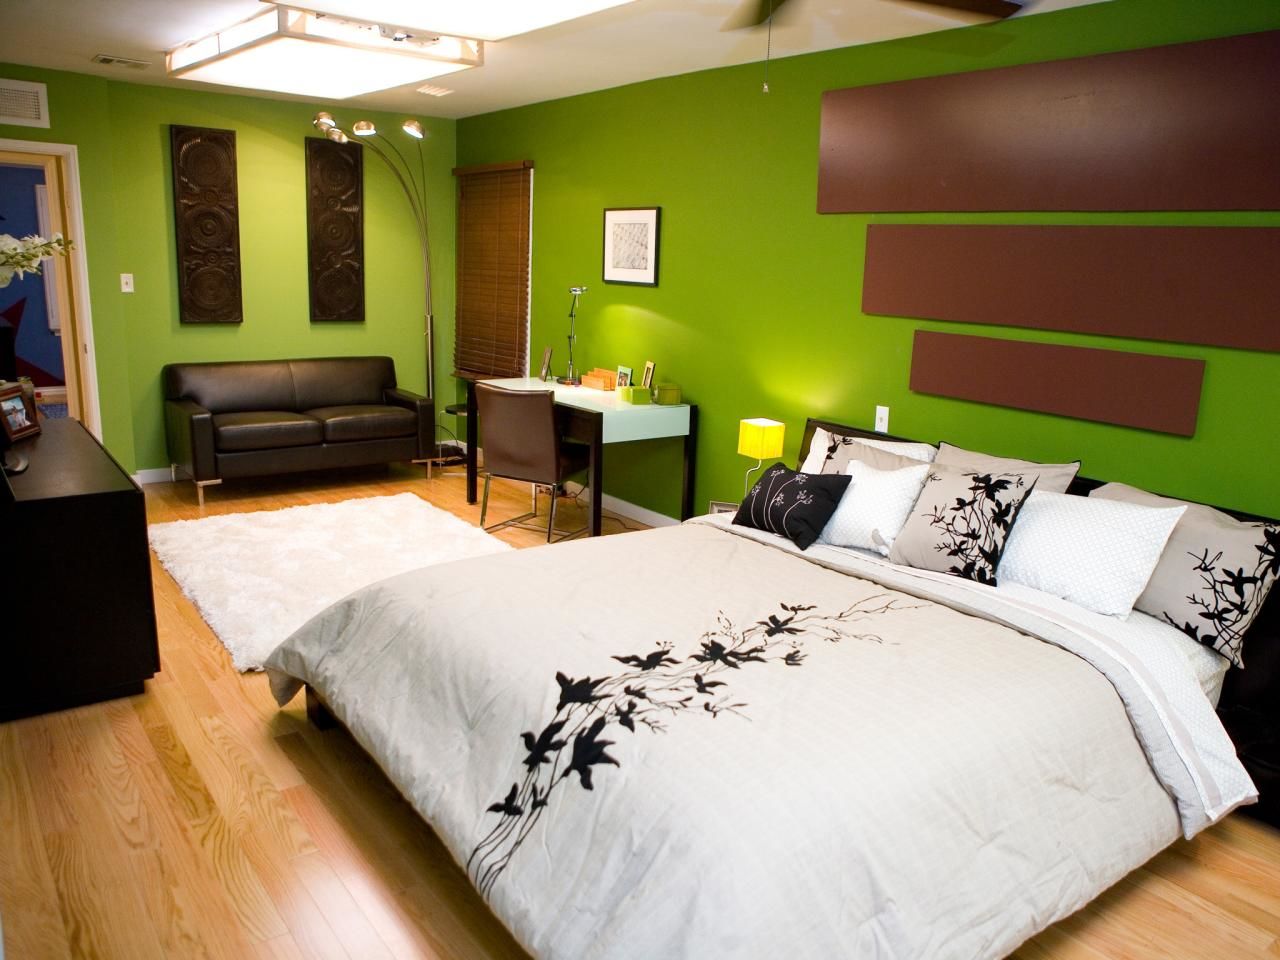 Phòng ngủ màu xanh lá - nâu giúp bạn sở hữu một không gian nghỉ ngơi thoáng đãng lý tưởng nhất